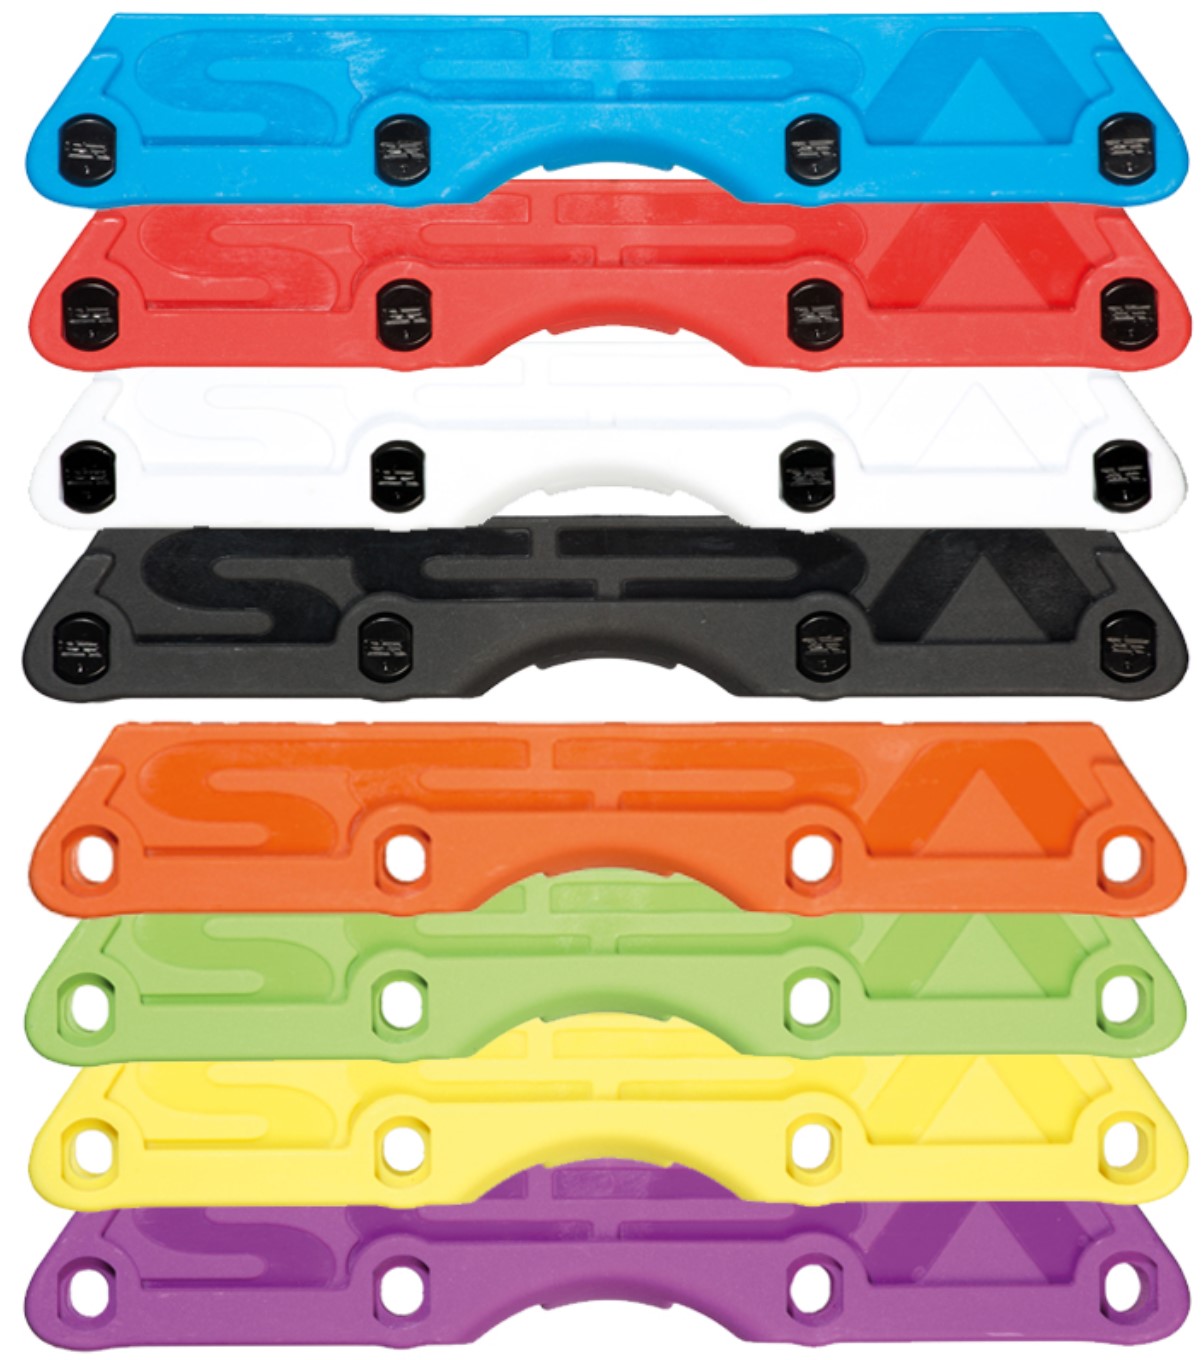 Seba CJ UFS frames in multiple colours